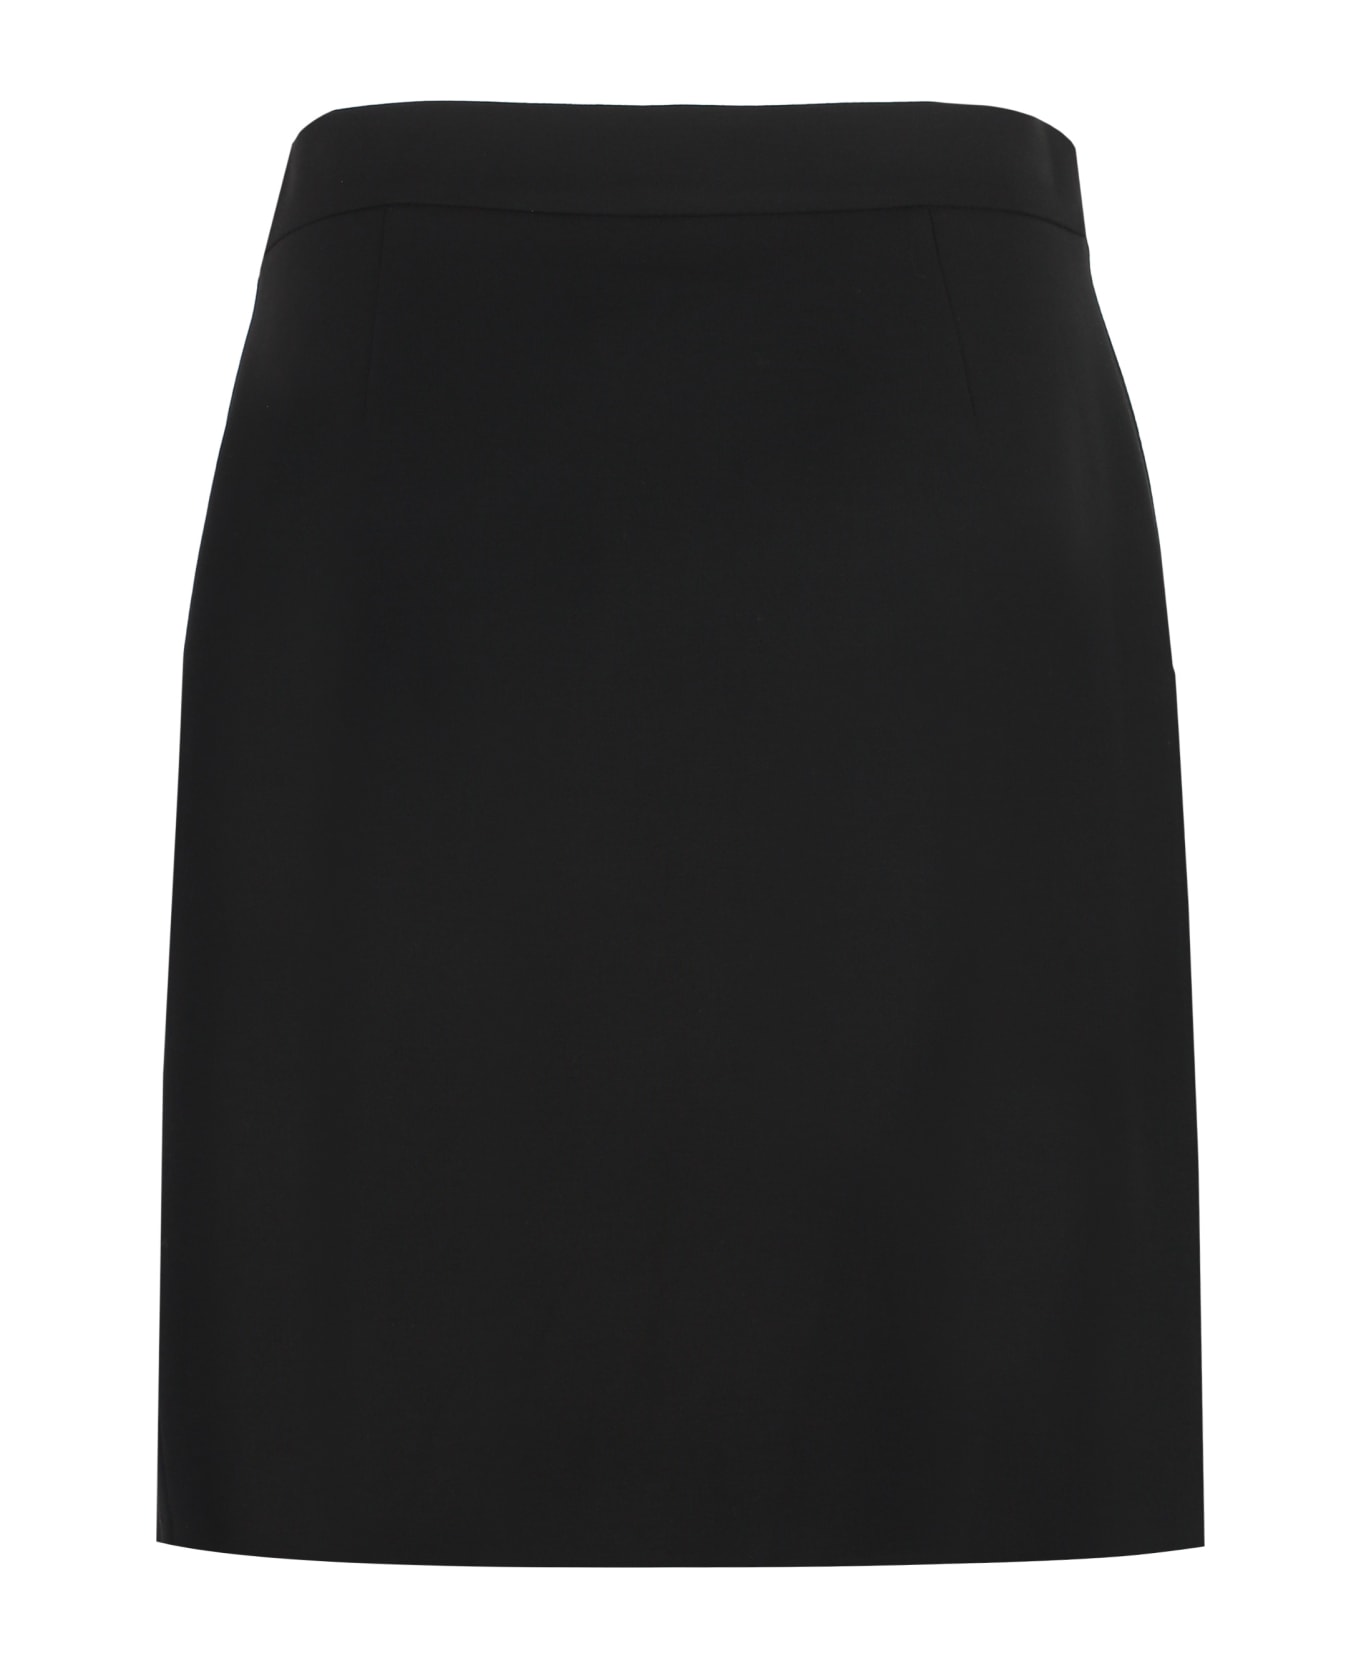 Hugo Boss Asymmetric Wrap Skirt - black スカート